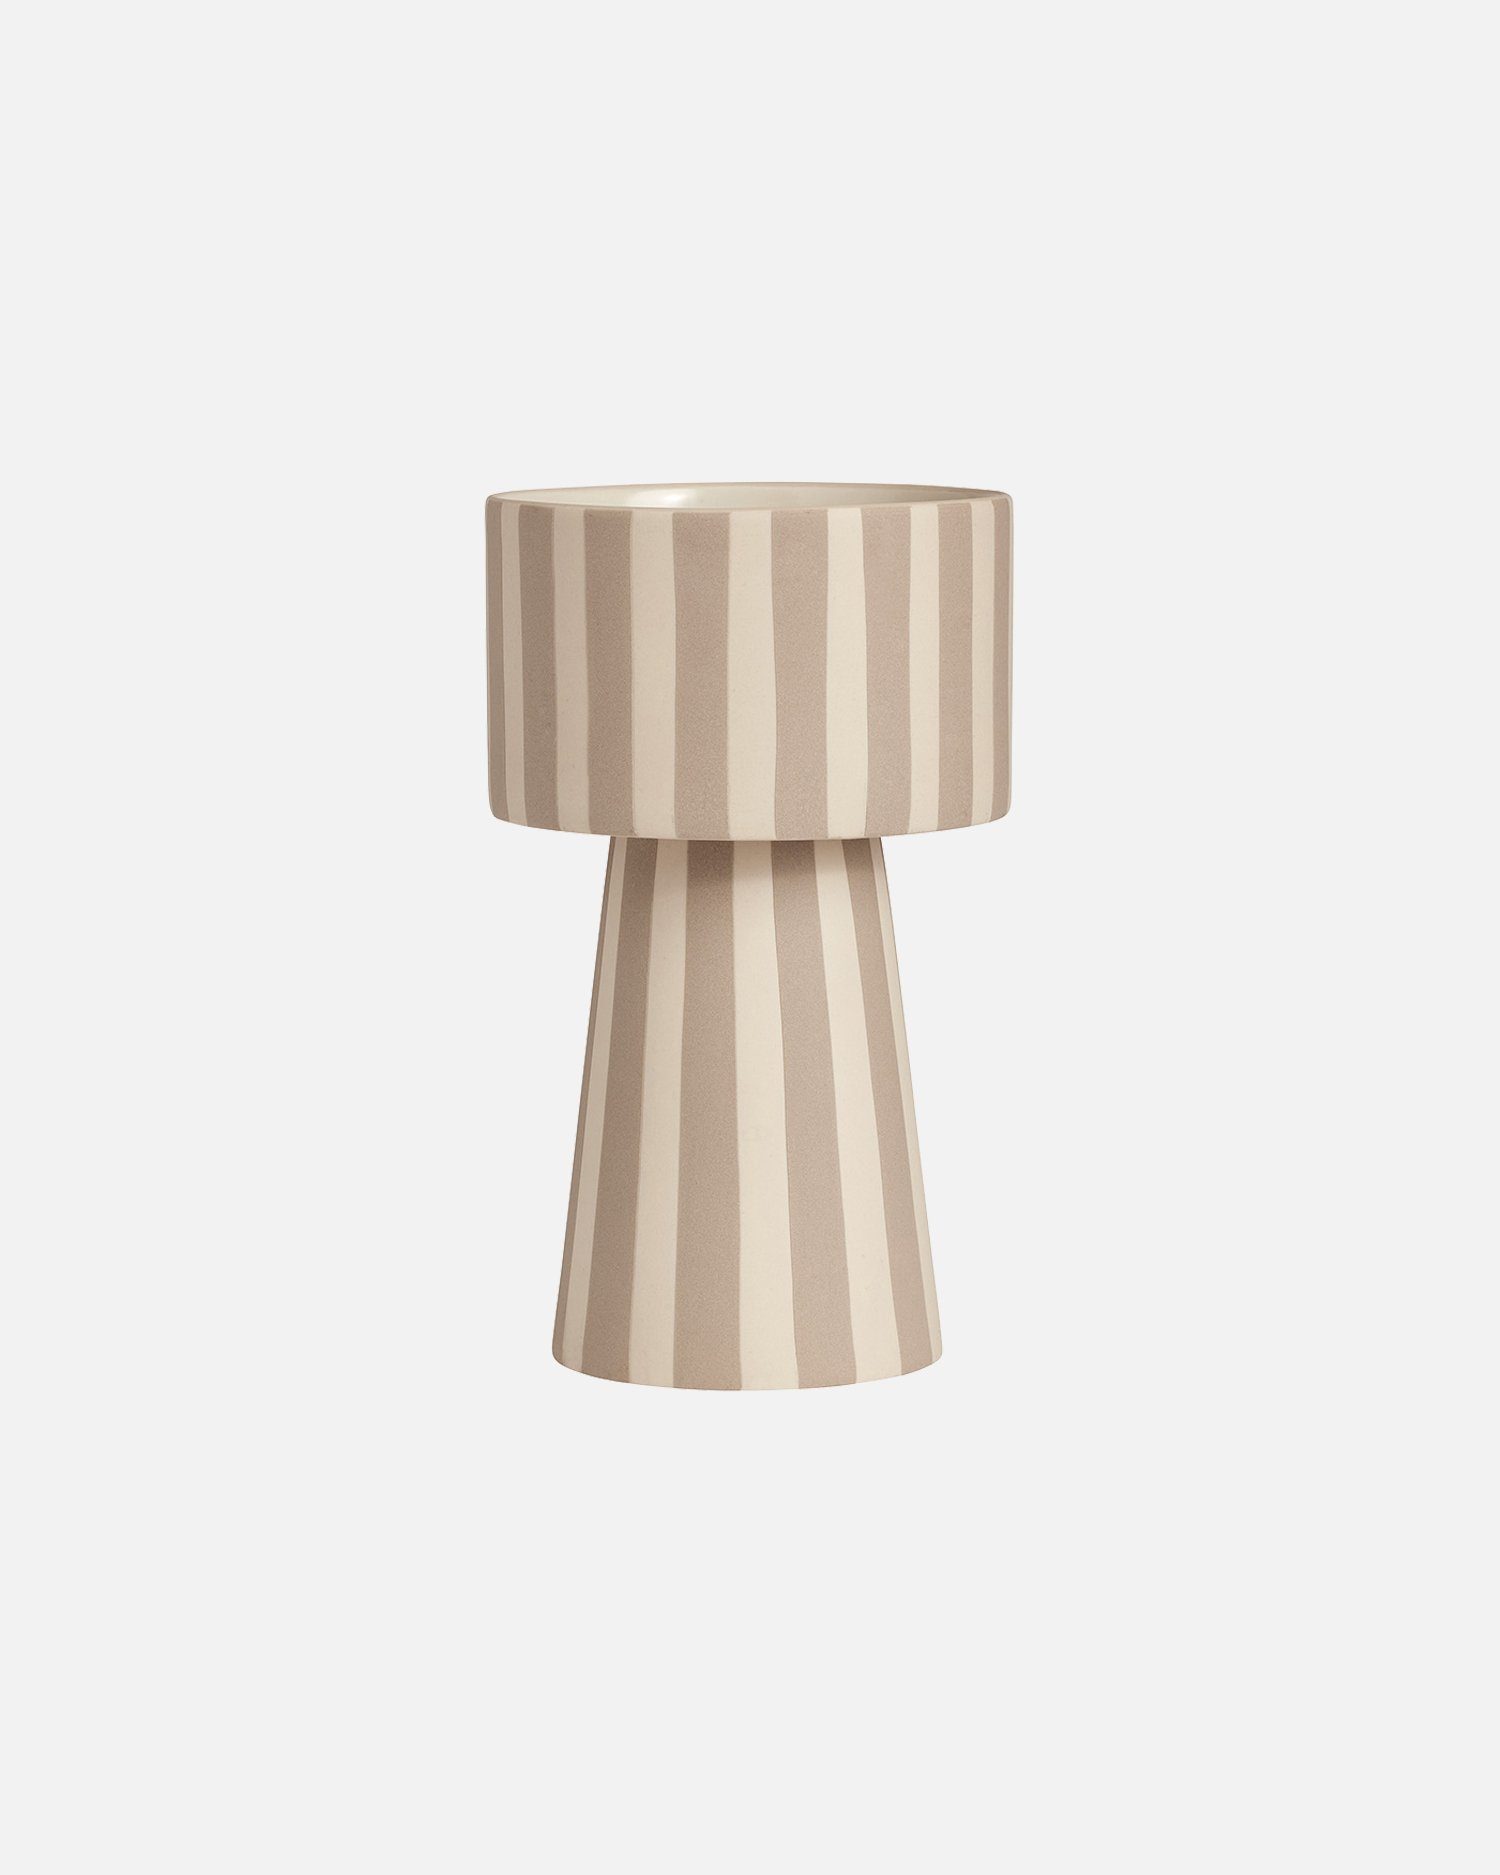 OYOY Übertopf Toppu Pot Groß - Blumentopf/Vase aus Keramik Ø15 x H24 cm, Beige (Clay) Beige-Weiß-Gestreift